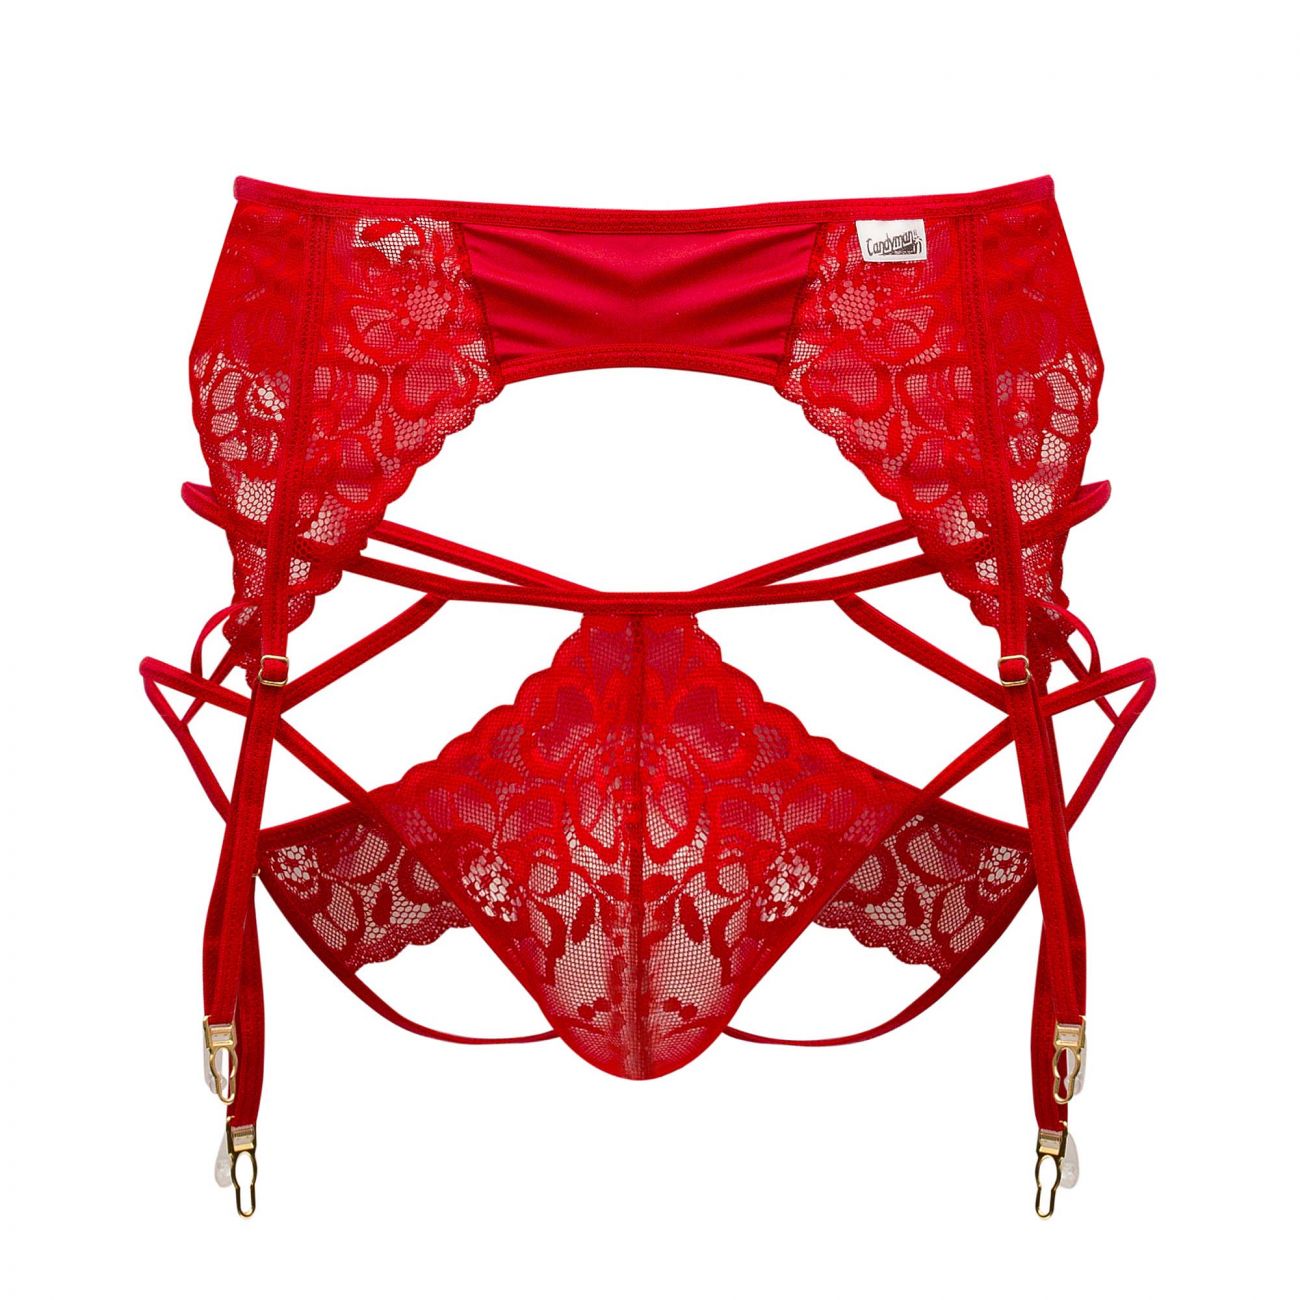 CandyMan 99550X Lace Garter-Jockstrap Red Plus Sizes